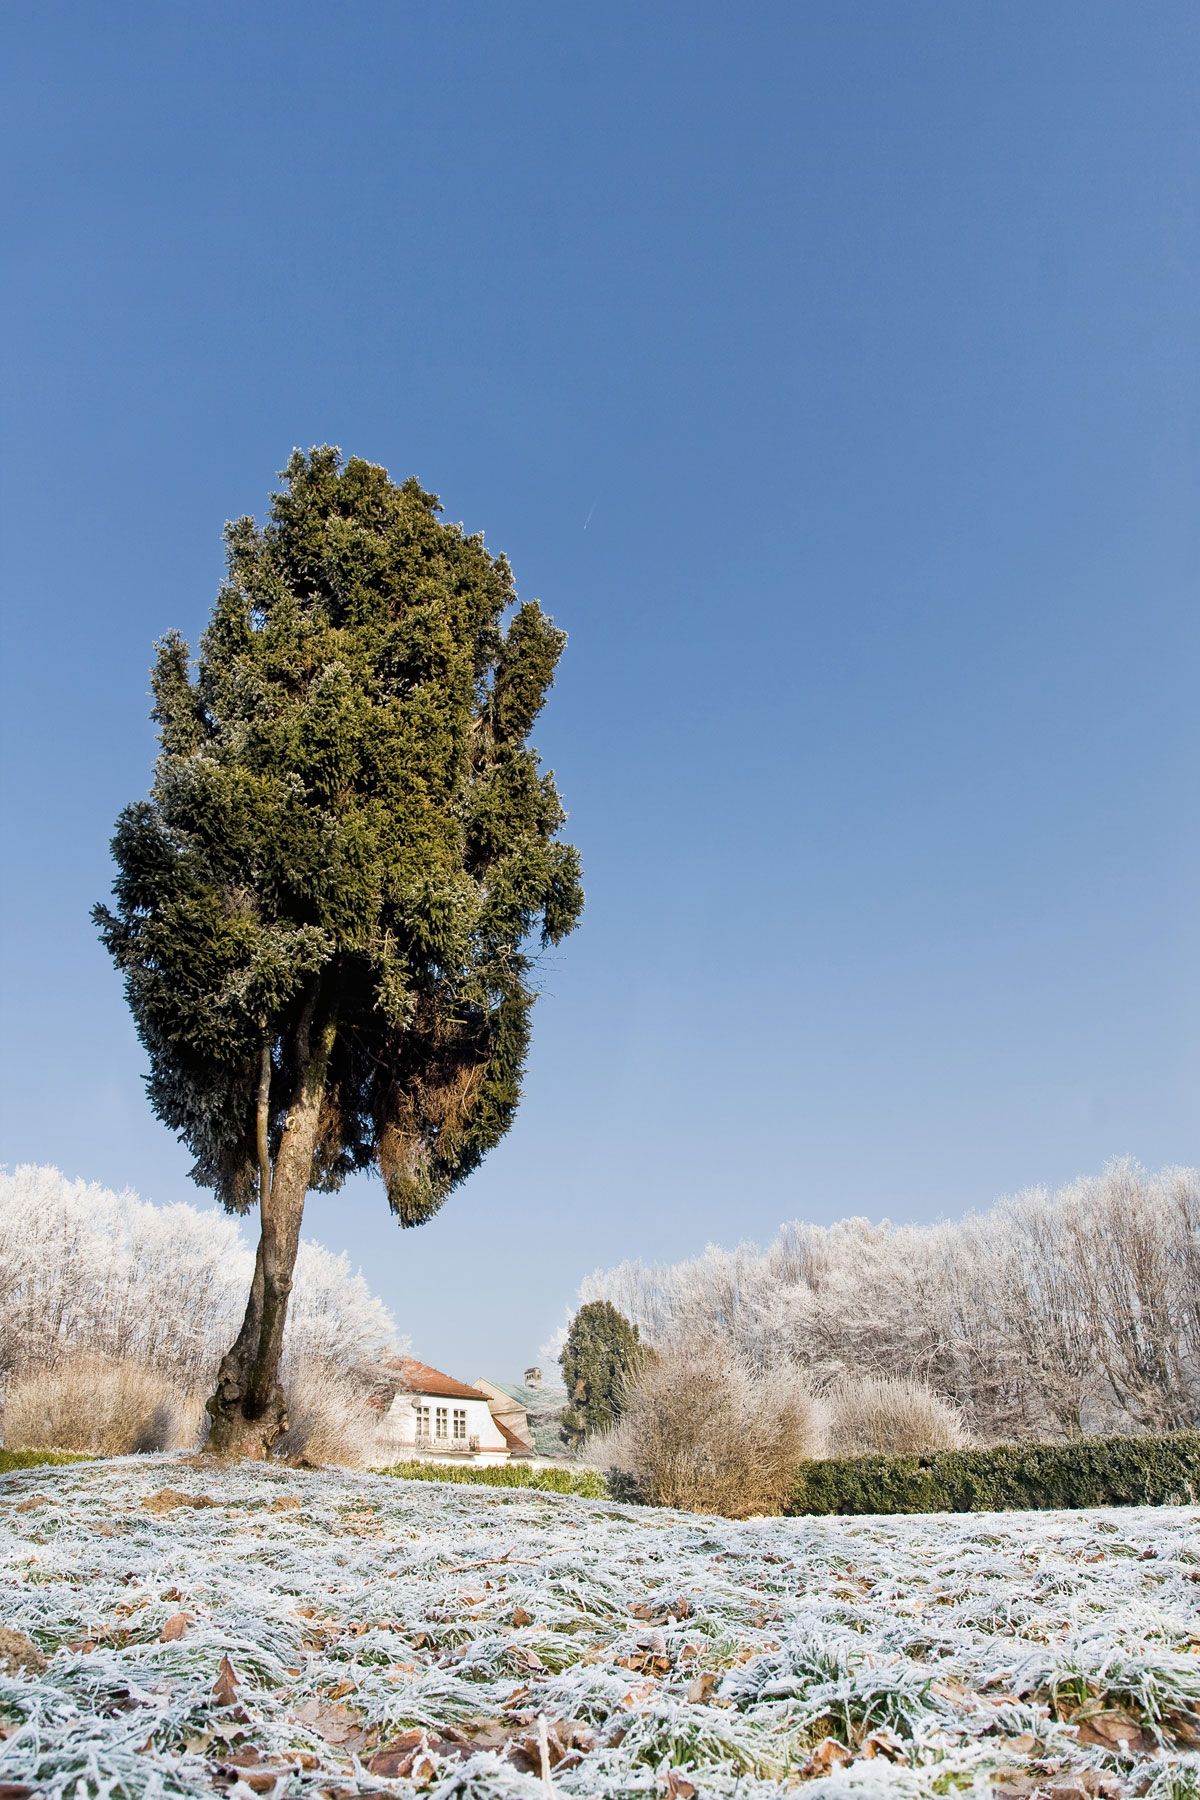 sosna limba w oszronionym ogrodzie włoskim - dwór z parkiem w Mogilanach pod Krakowem